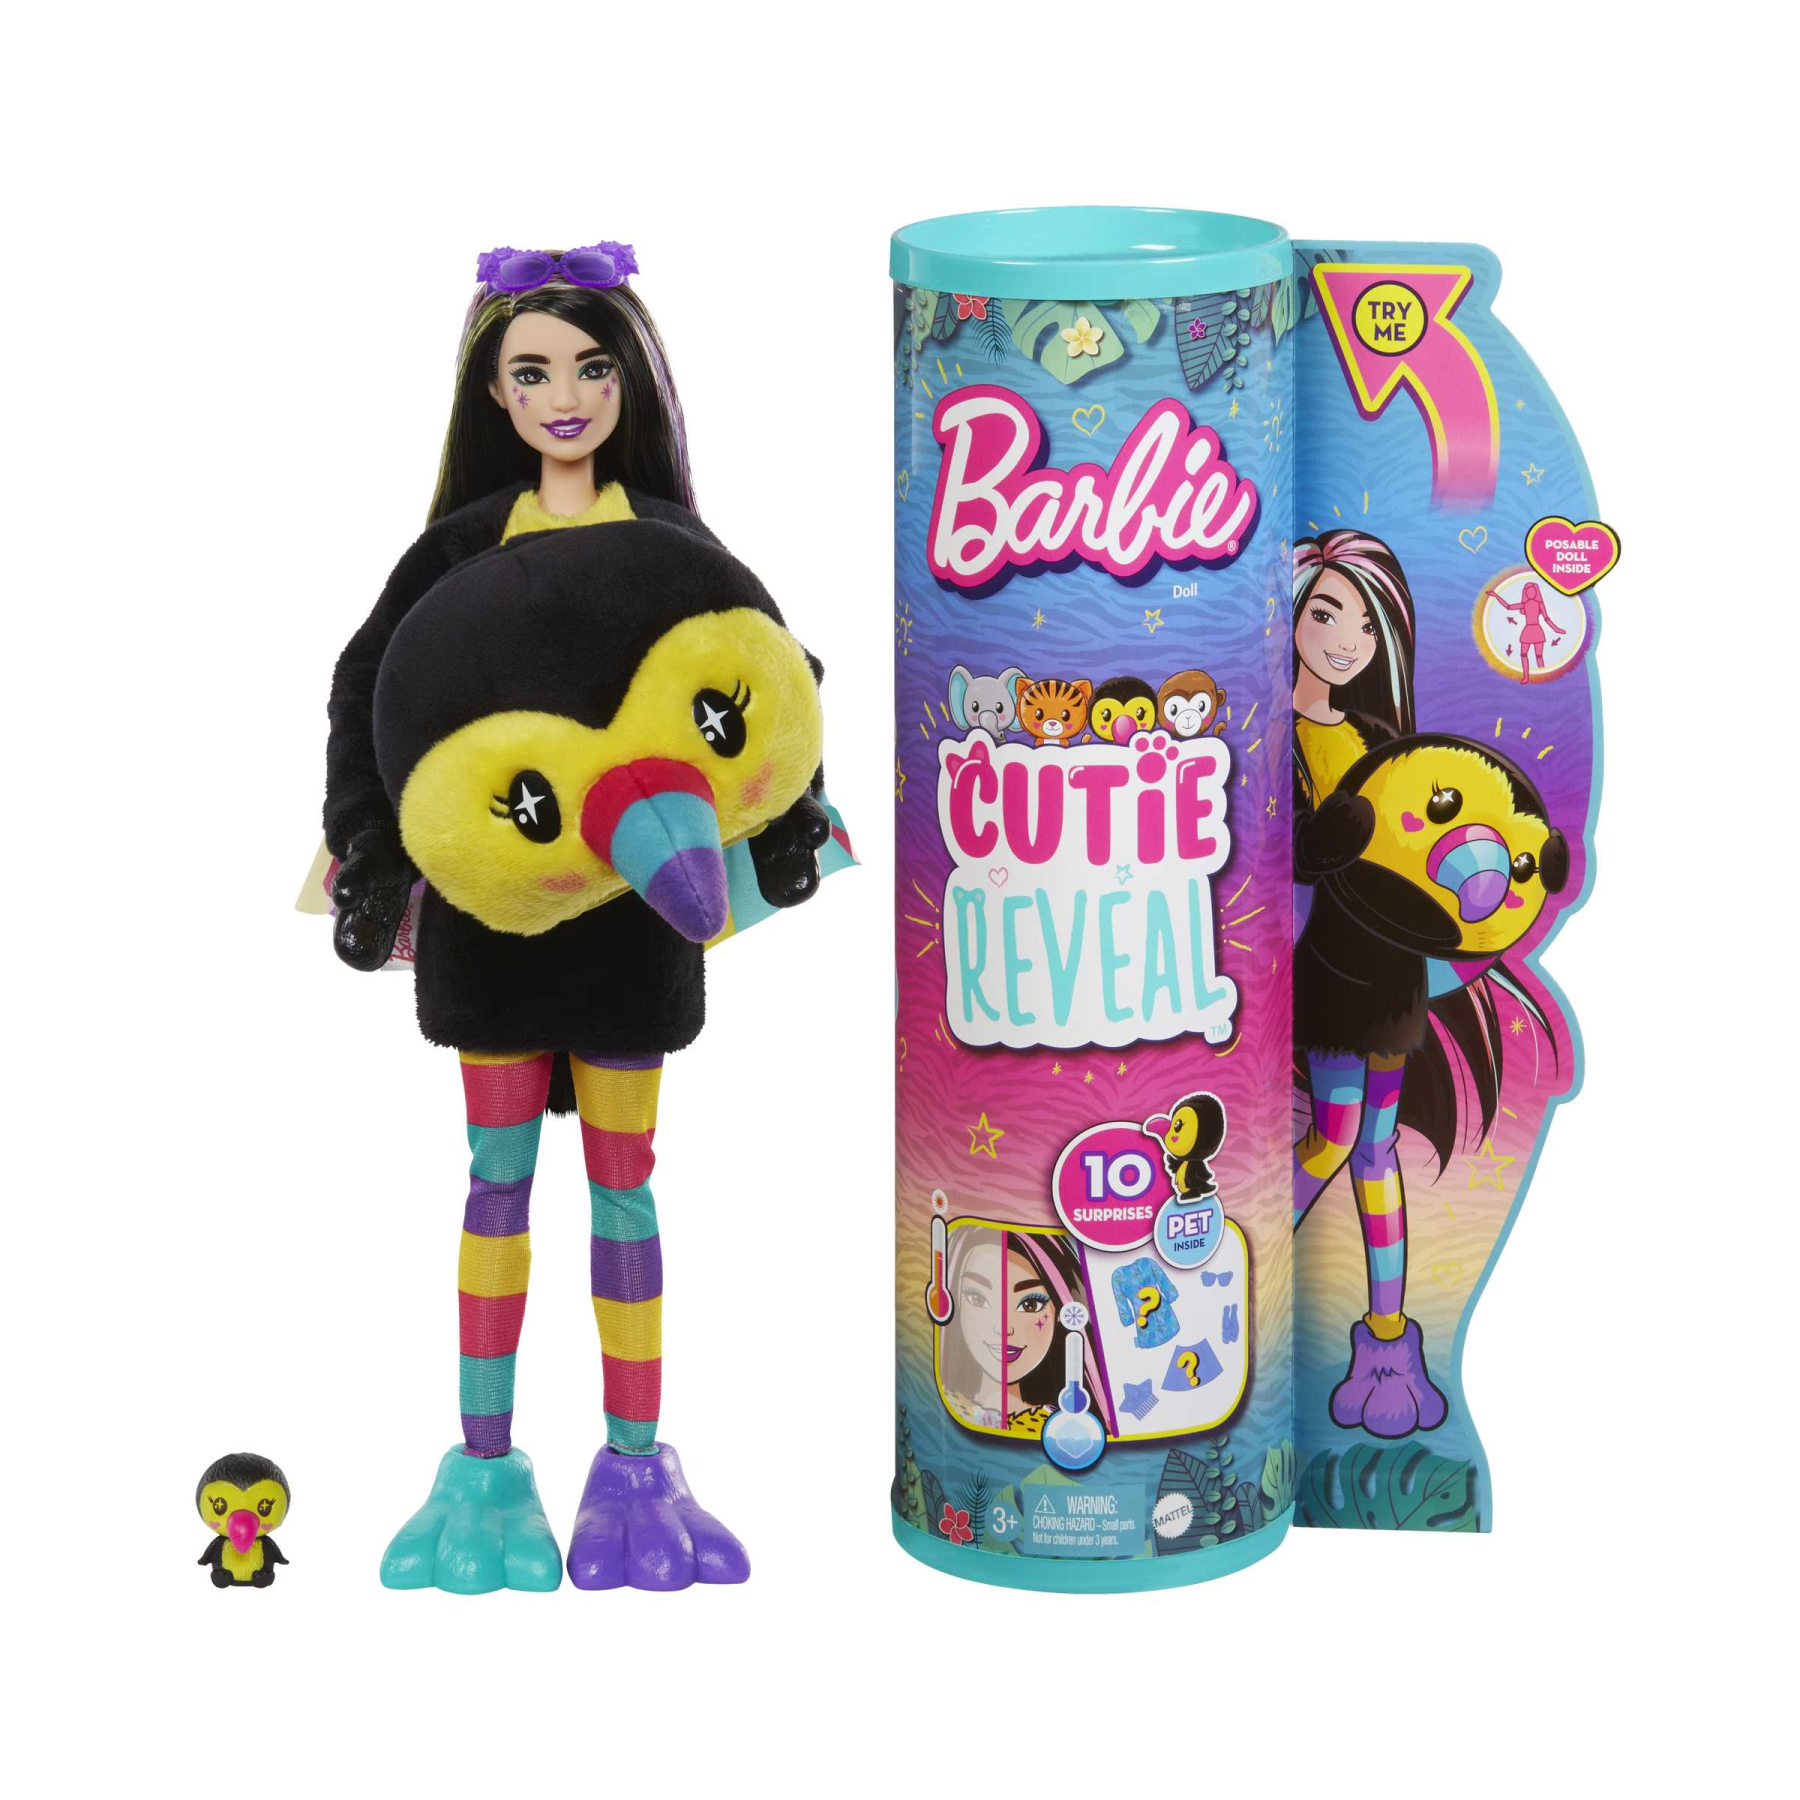 Barbie - barbie cutie reveal tucano, serie amici della giungla, bambola con costume da tucano di peluche e 10 sorprese con tecnologia cambia colore, giocattolo per bambini, 3+ anni, hkr00 - Barbie